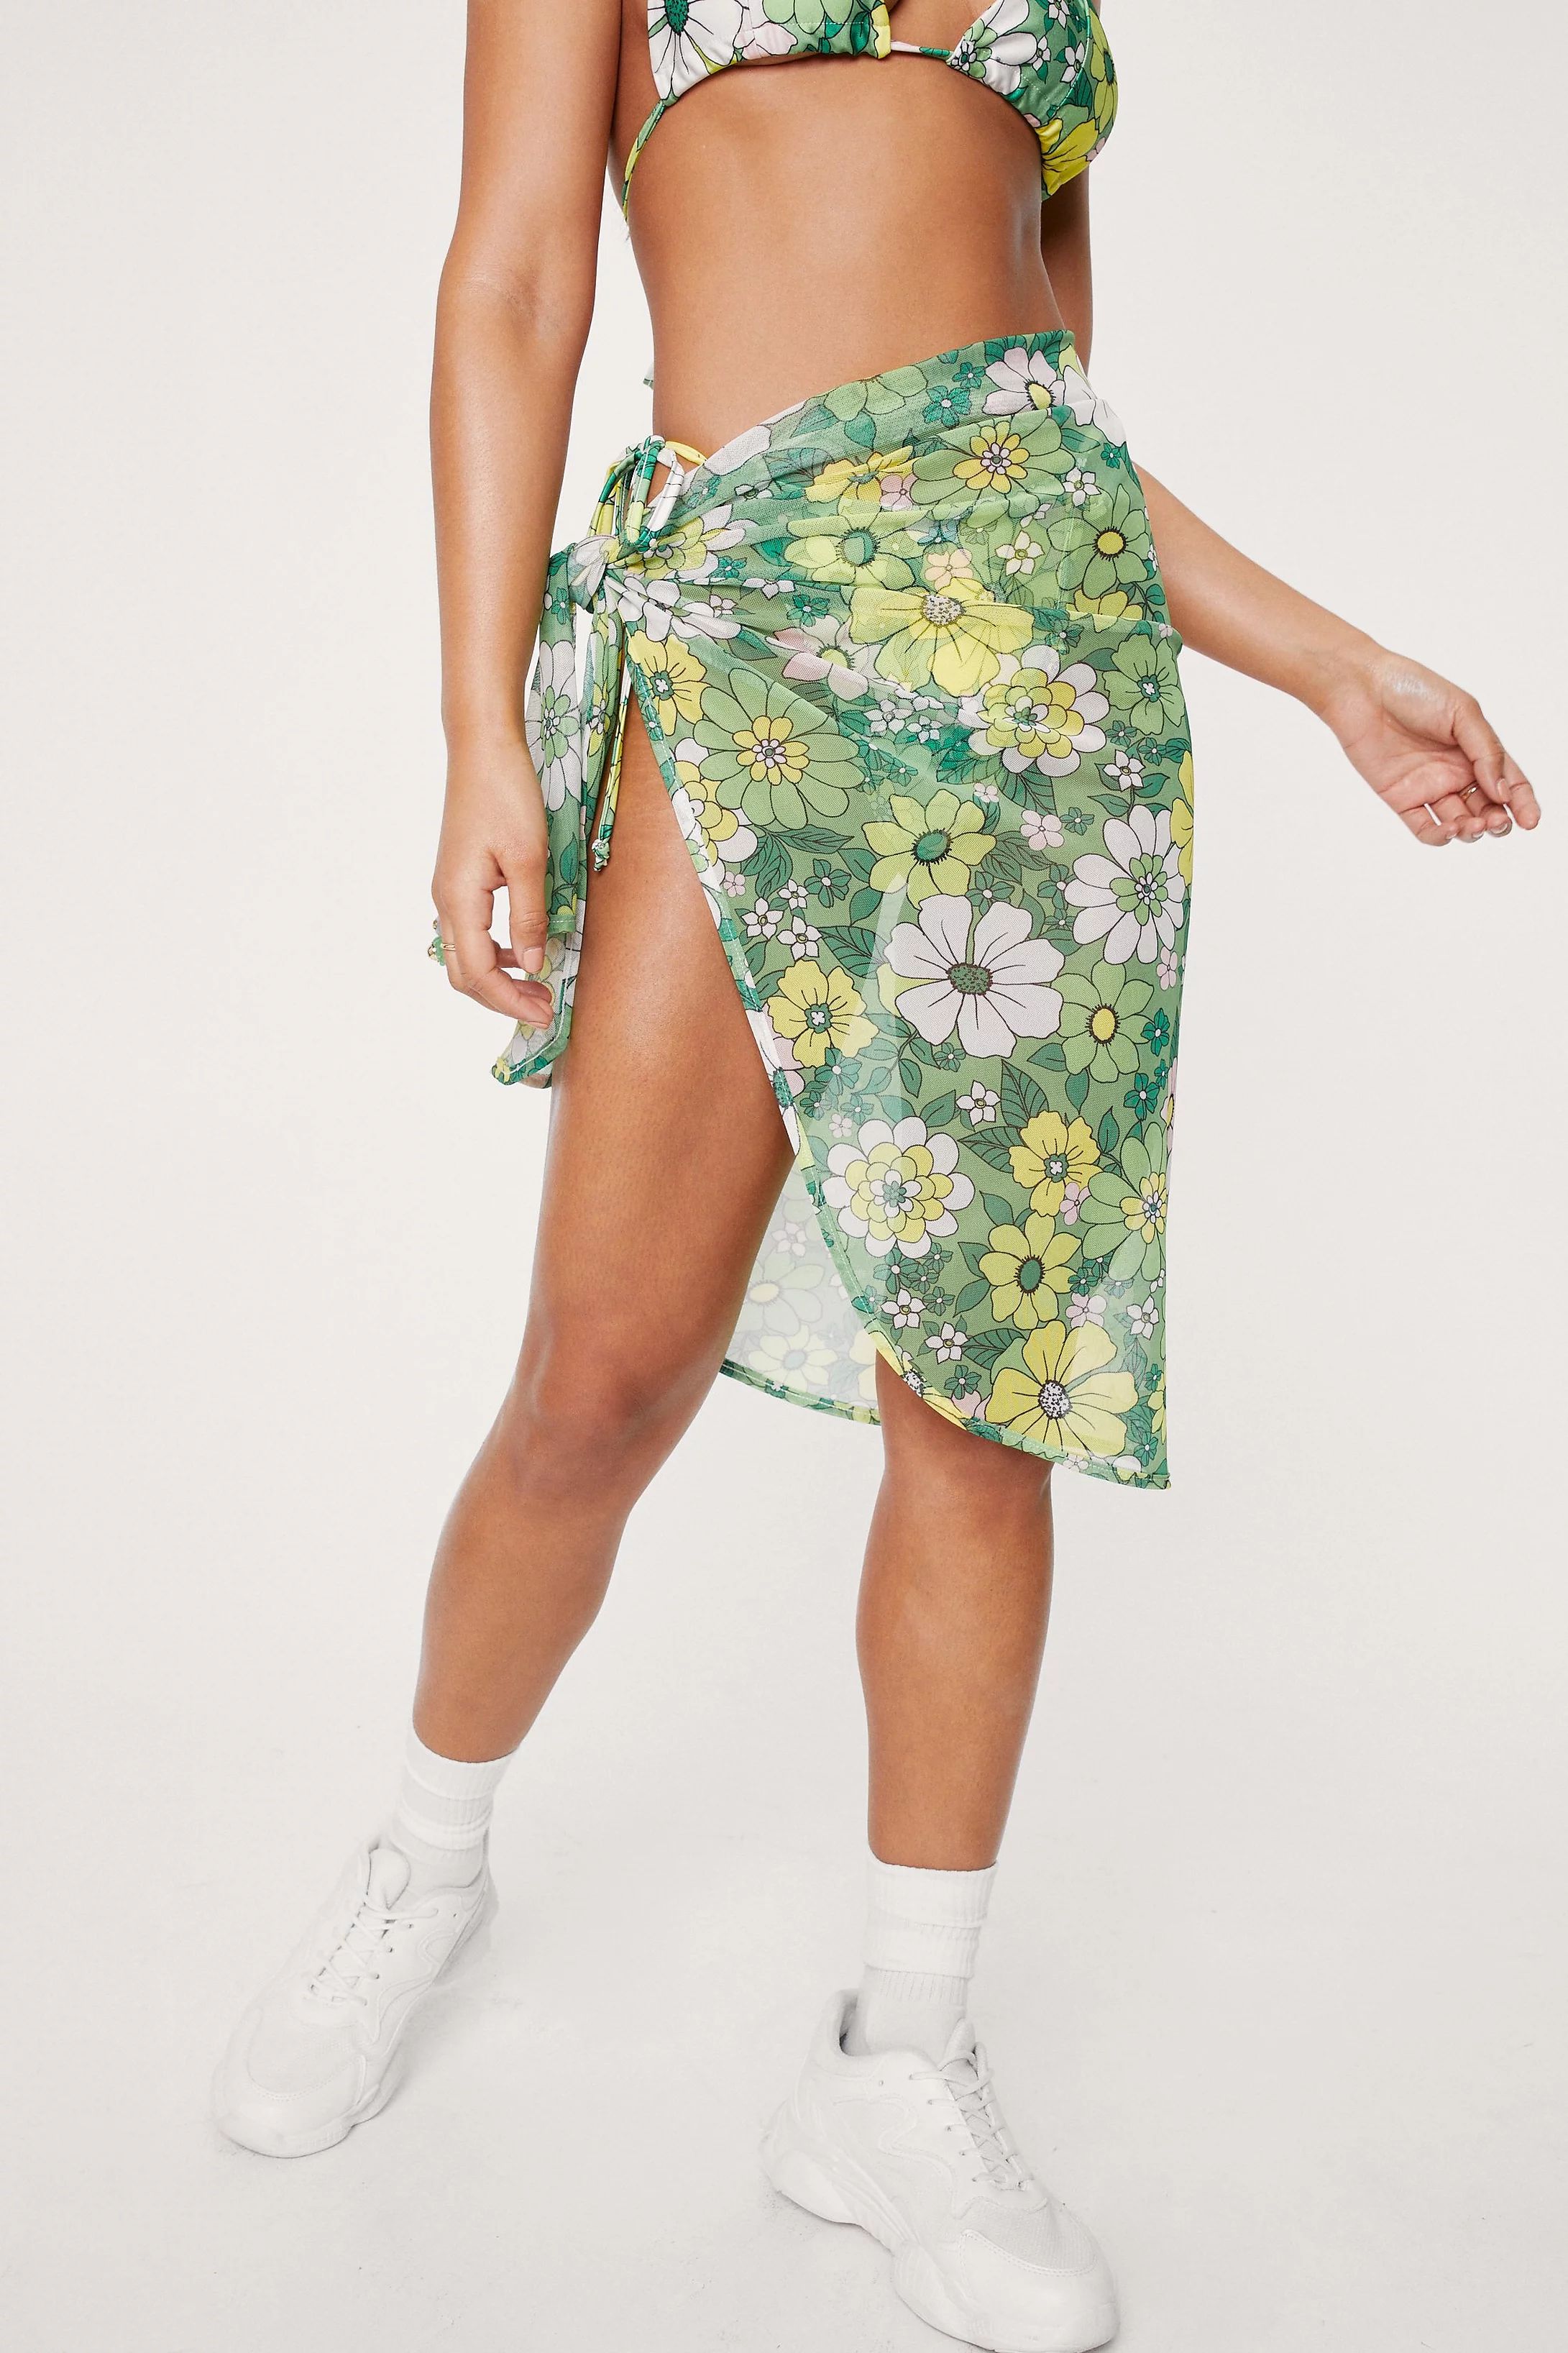 Floral Print Triangle 3 Pc Bikini and Sarong Set | Nasty Gal (US)